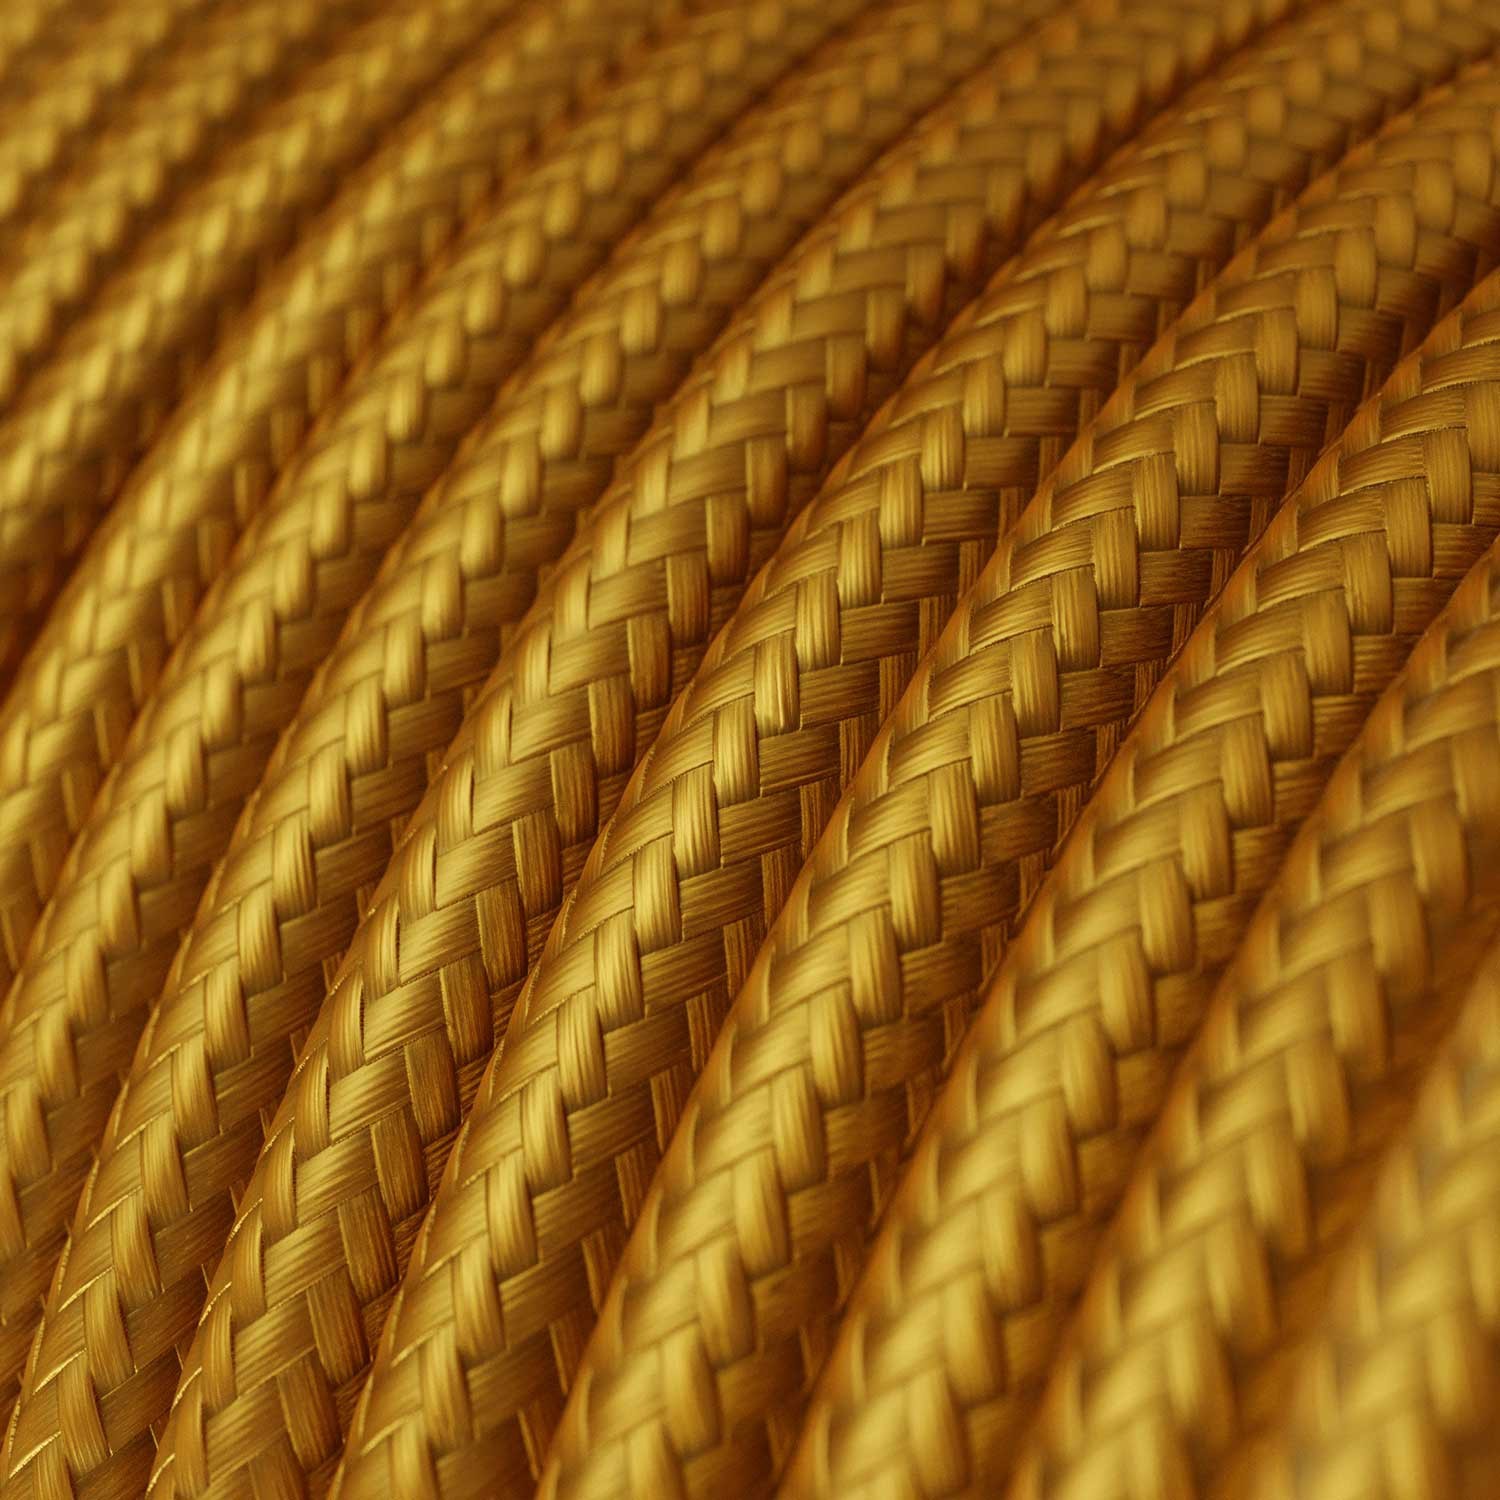 Okrogel tekstilen električen kabel RM05 - zlat